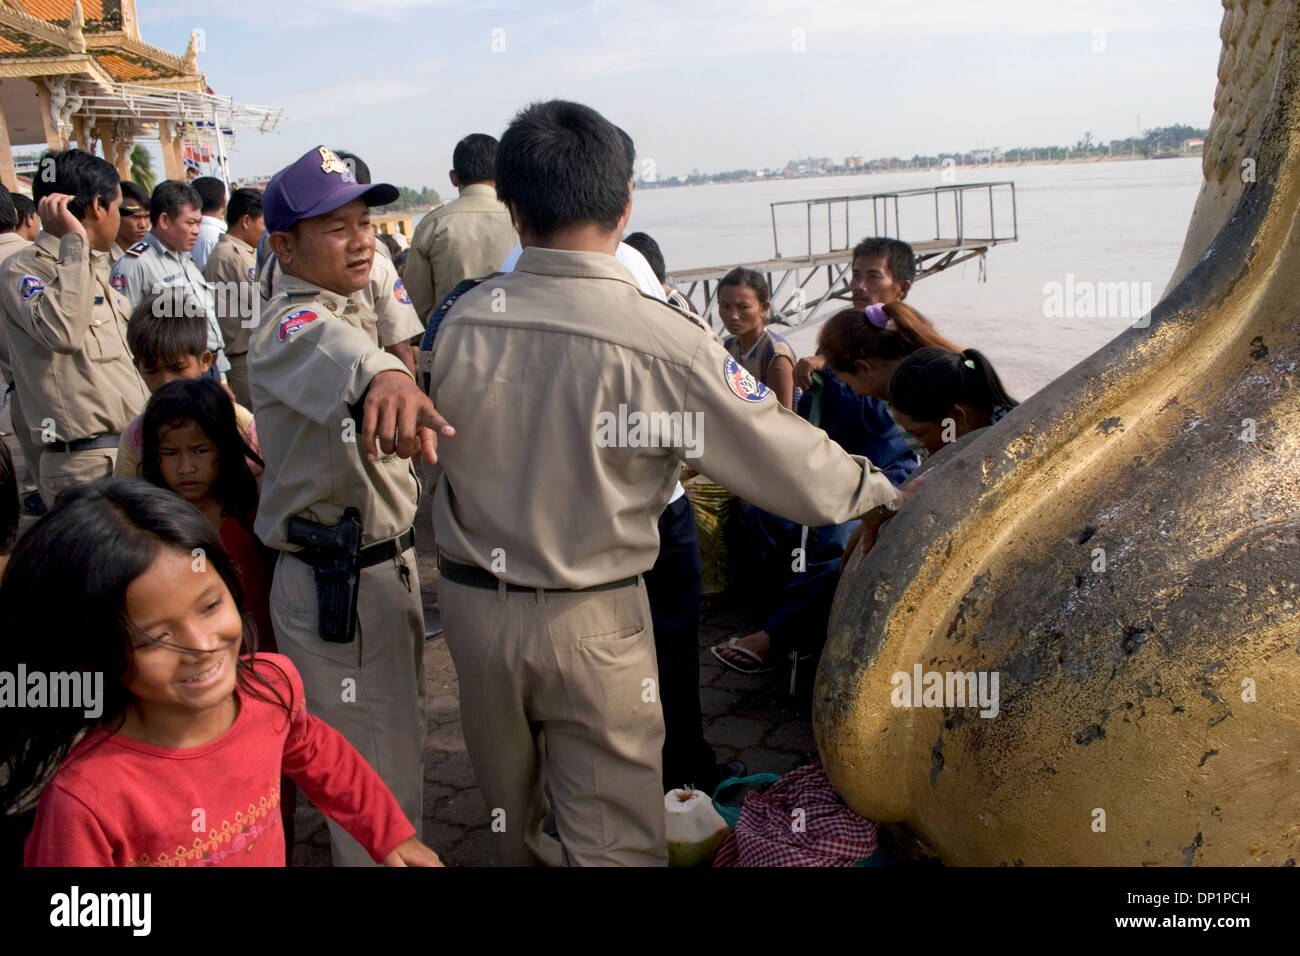 La police est de contrôler une foule d'enfants cambodgiens pauvres près du fleuve Mékong à Phnom Penh, Cambodge. Banque D'Images